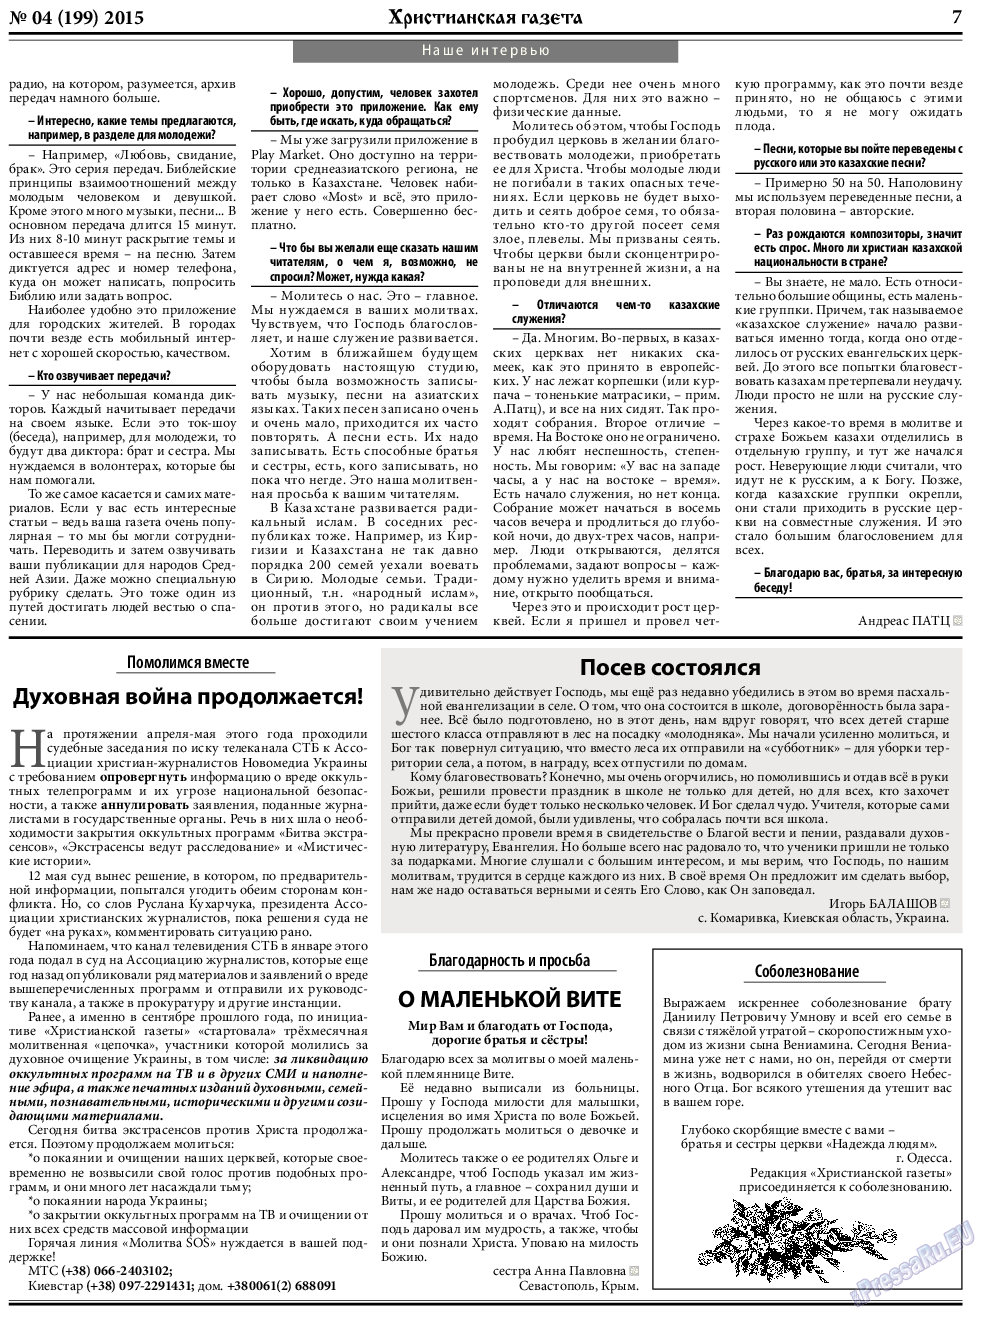 Христианская газета, газета. 2015 №5 стр.7